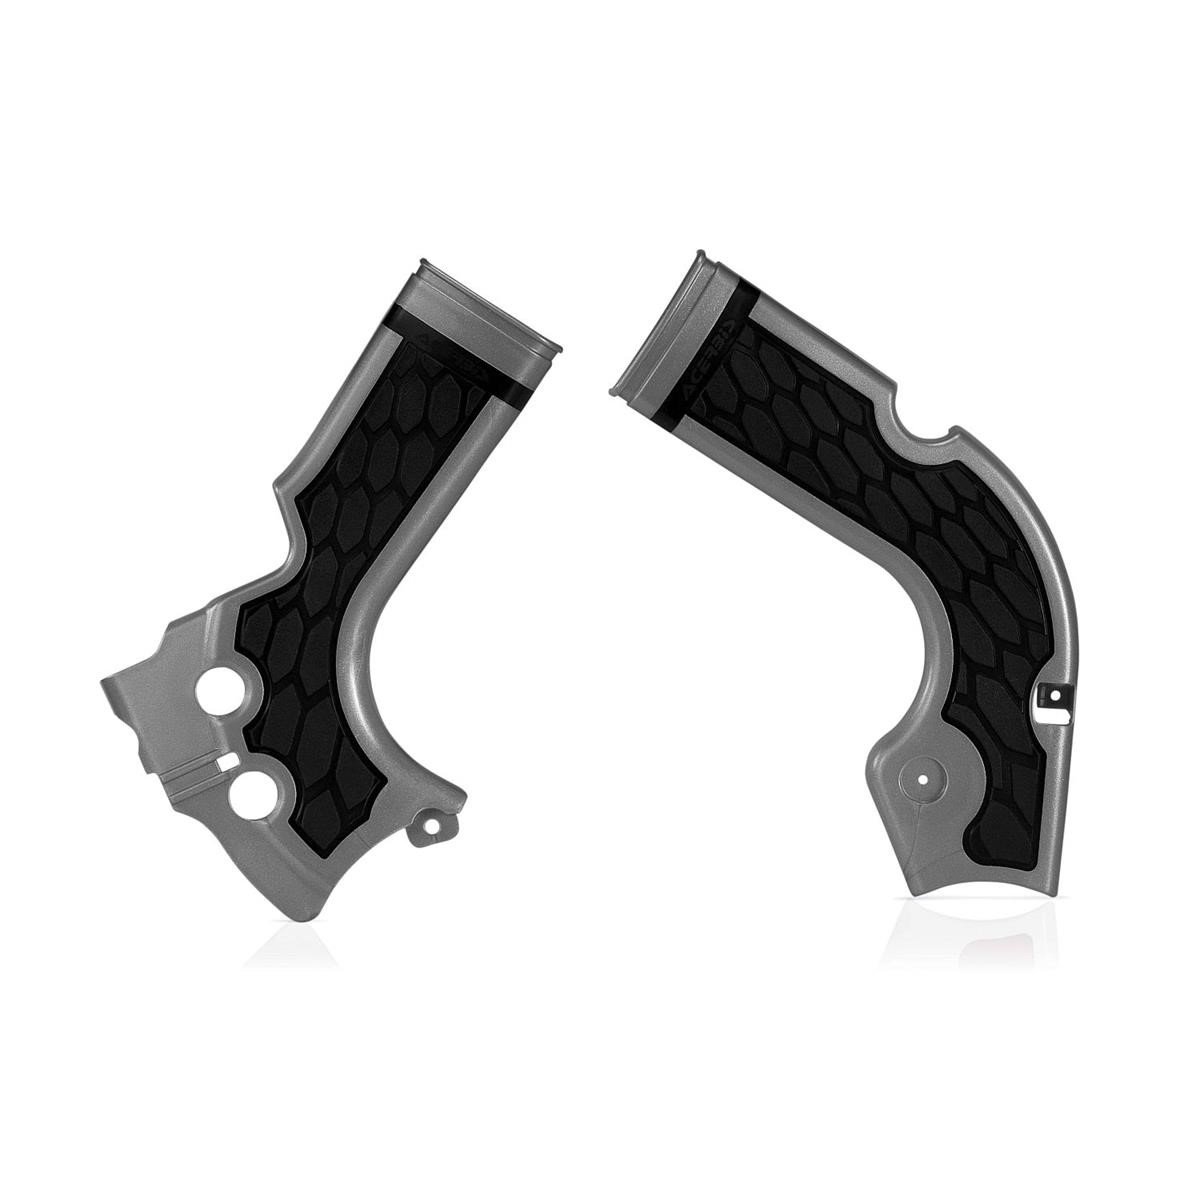 Acerbis Rahmenschutz X-Grip Honda CRF 250 14-17, CRF 450 13-16, Silber/Schwarz